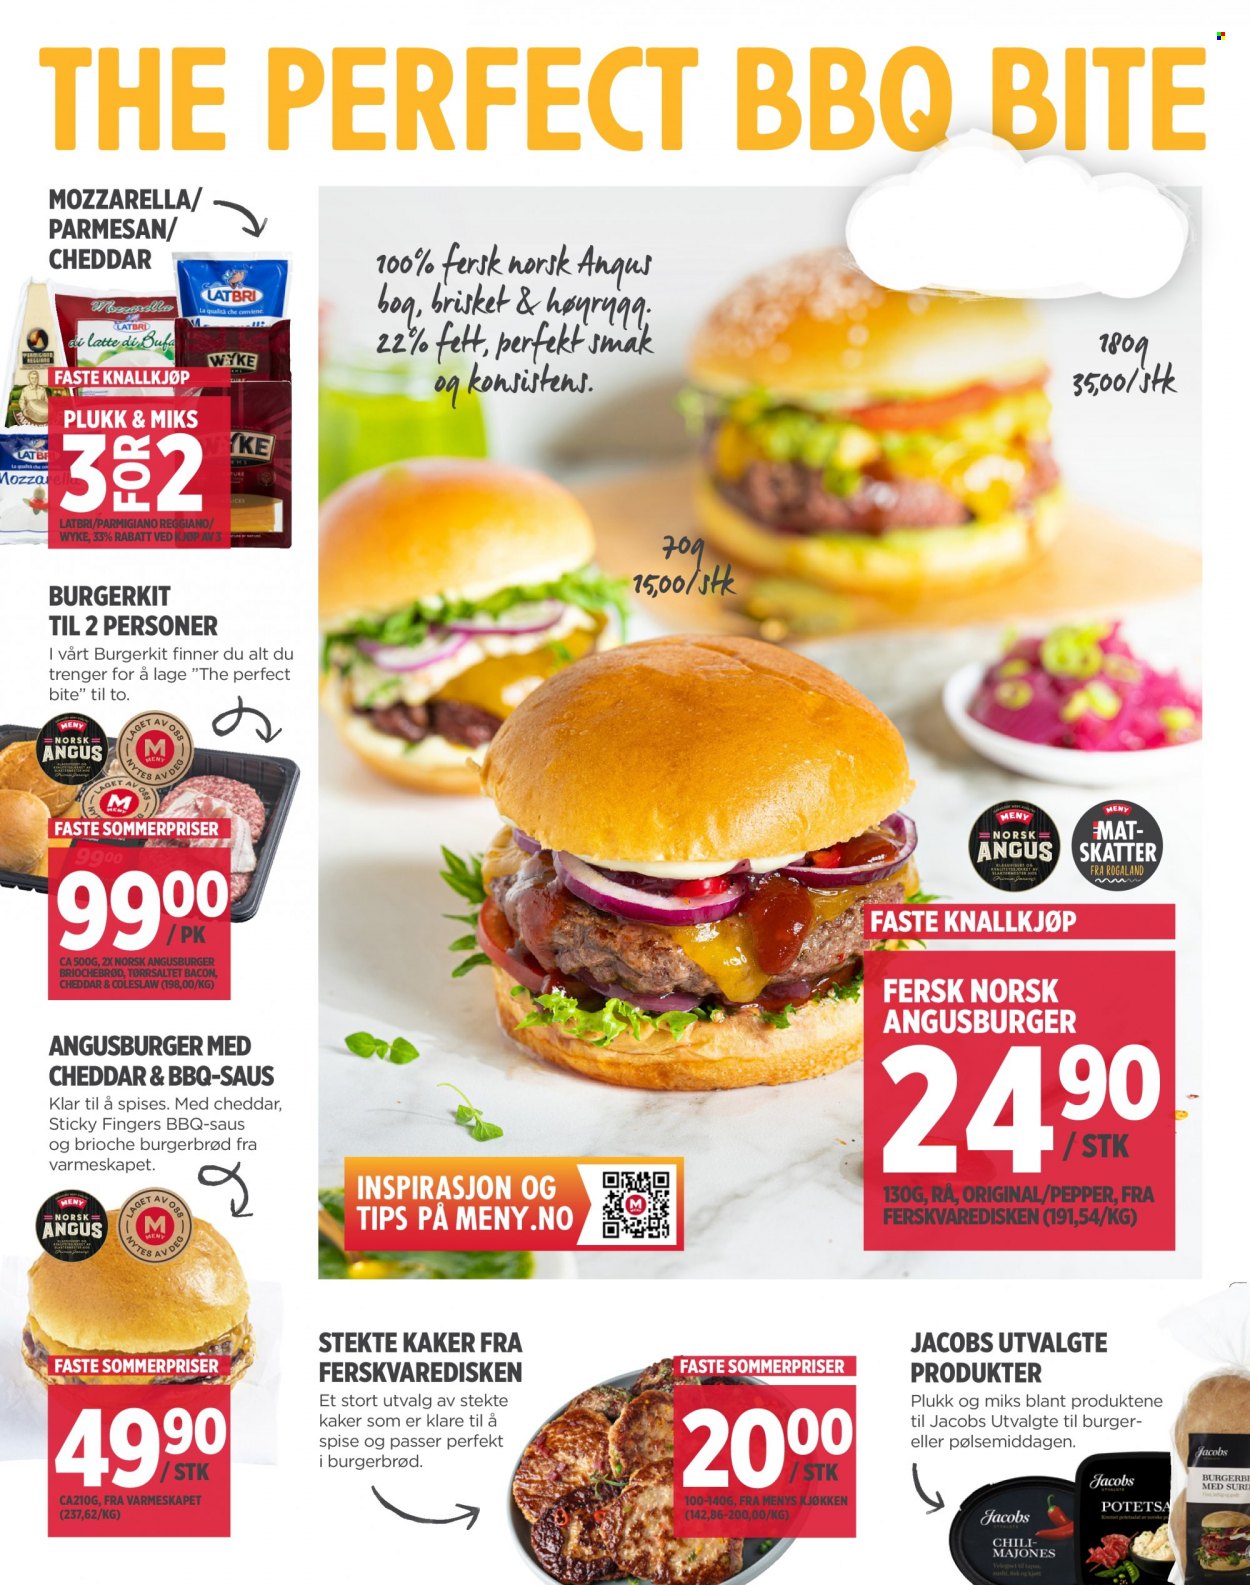 thumbnail - Kundeavis MENY - 5.6.2023 - 10.6.2023 - Produkter fra tilbudsaviser - høyrygg, burger, burgerbrød, bacon, Cheddar, mozzarella, parmesan, Parmigiano. Side 4.